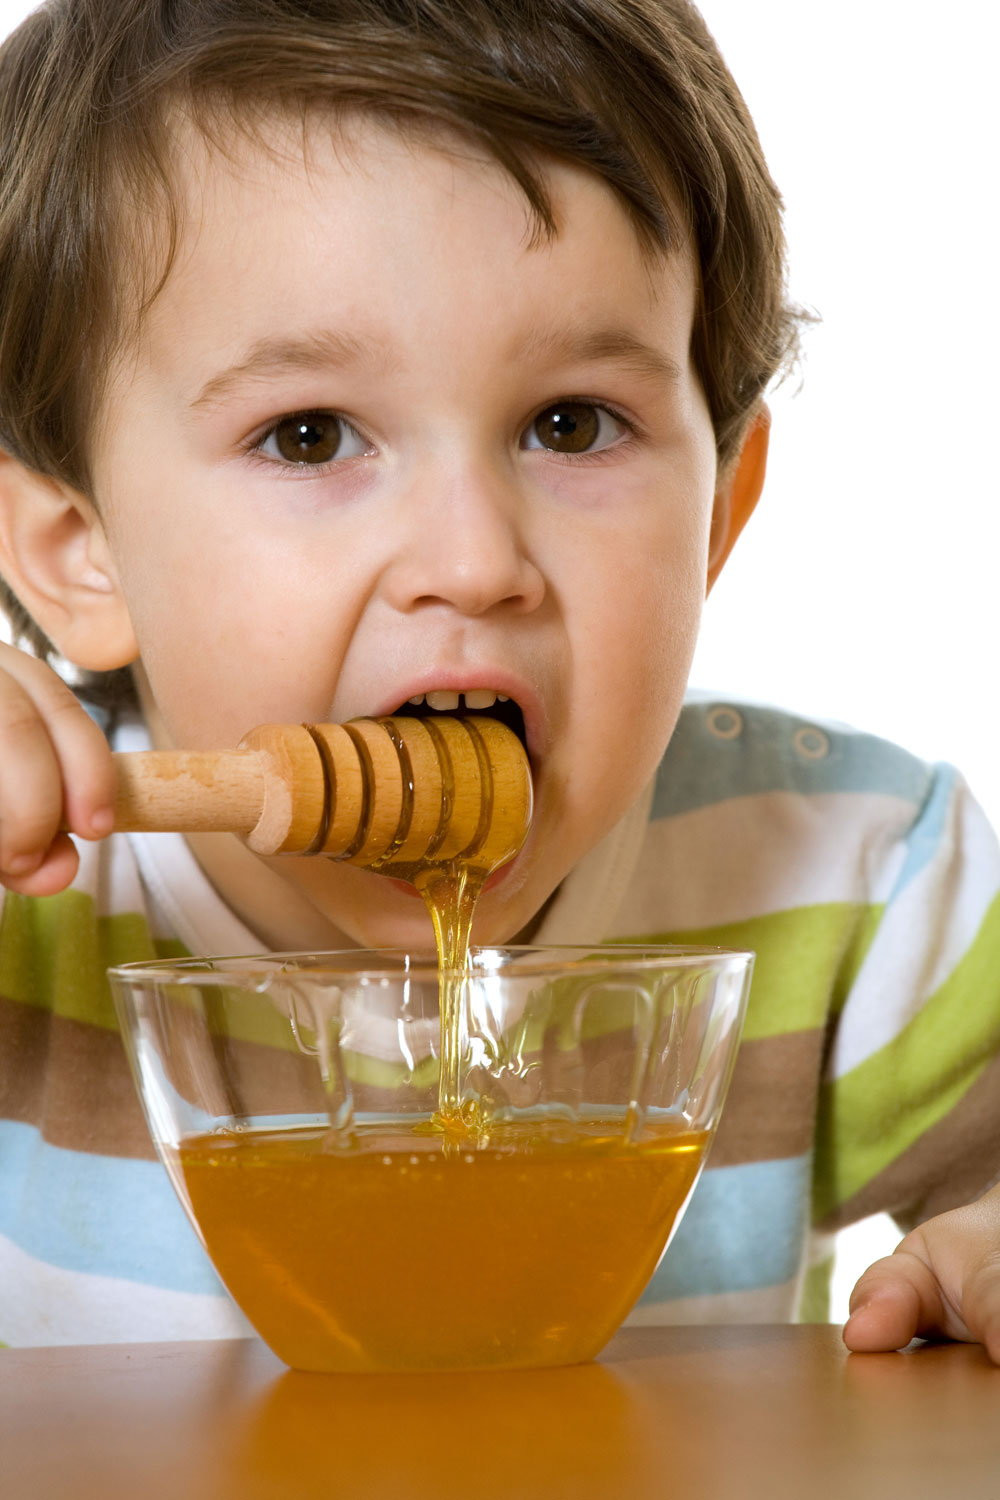 عسل برای کودکان زیر2سال مفید یا مضر؟